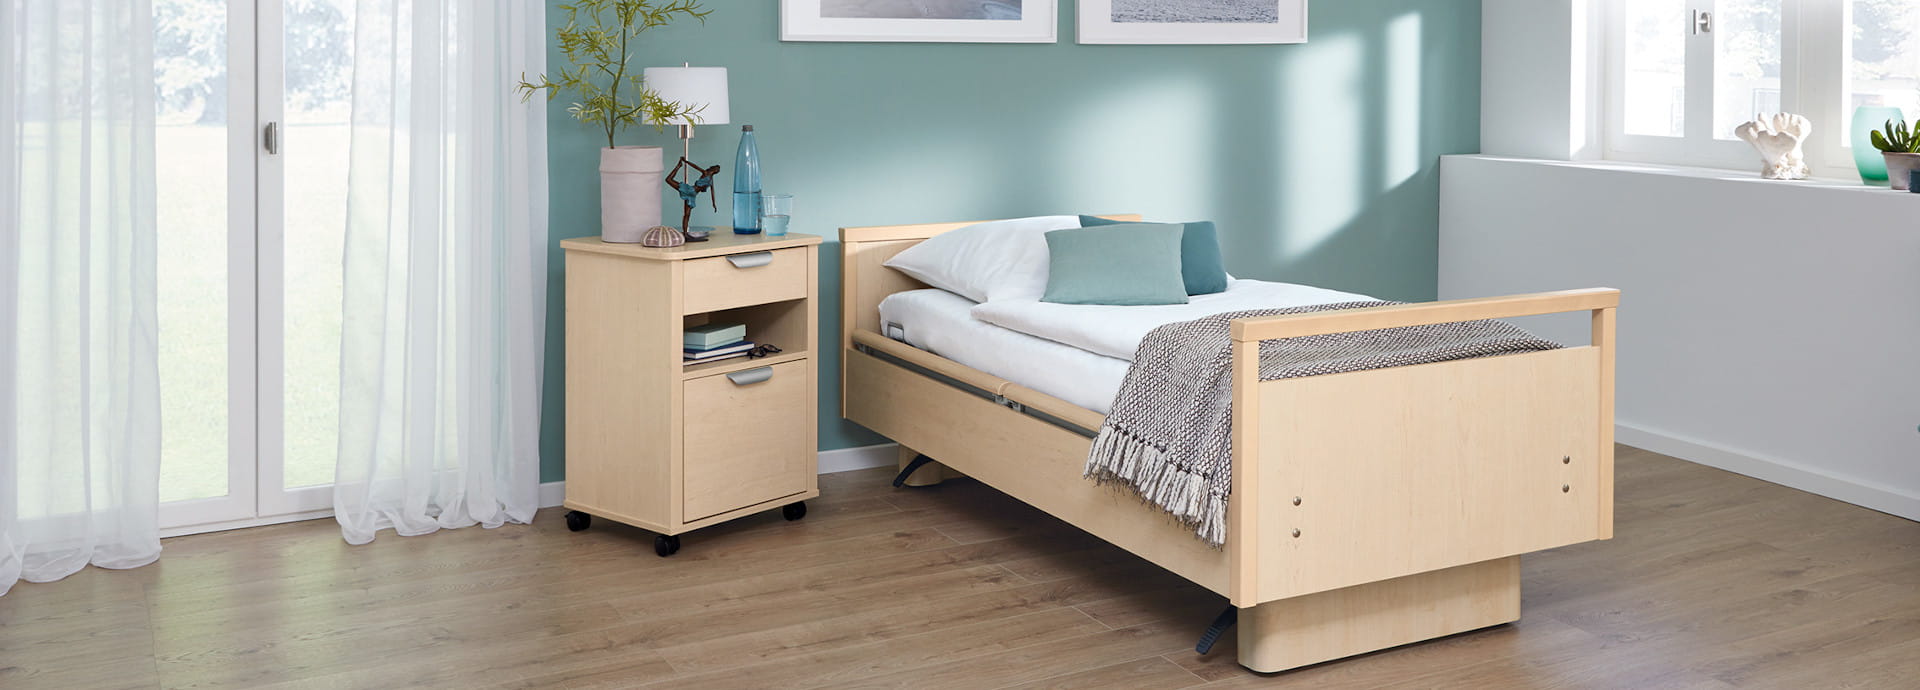 Les lits de soins sentida - une sécurité optimale associée à un design confortable.